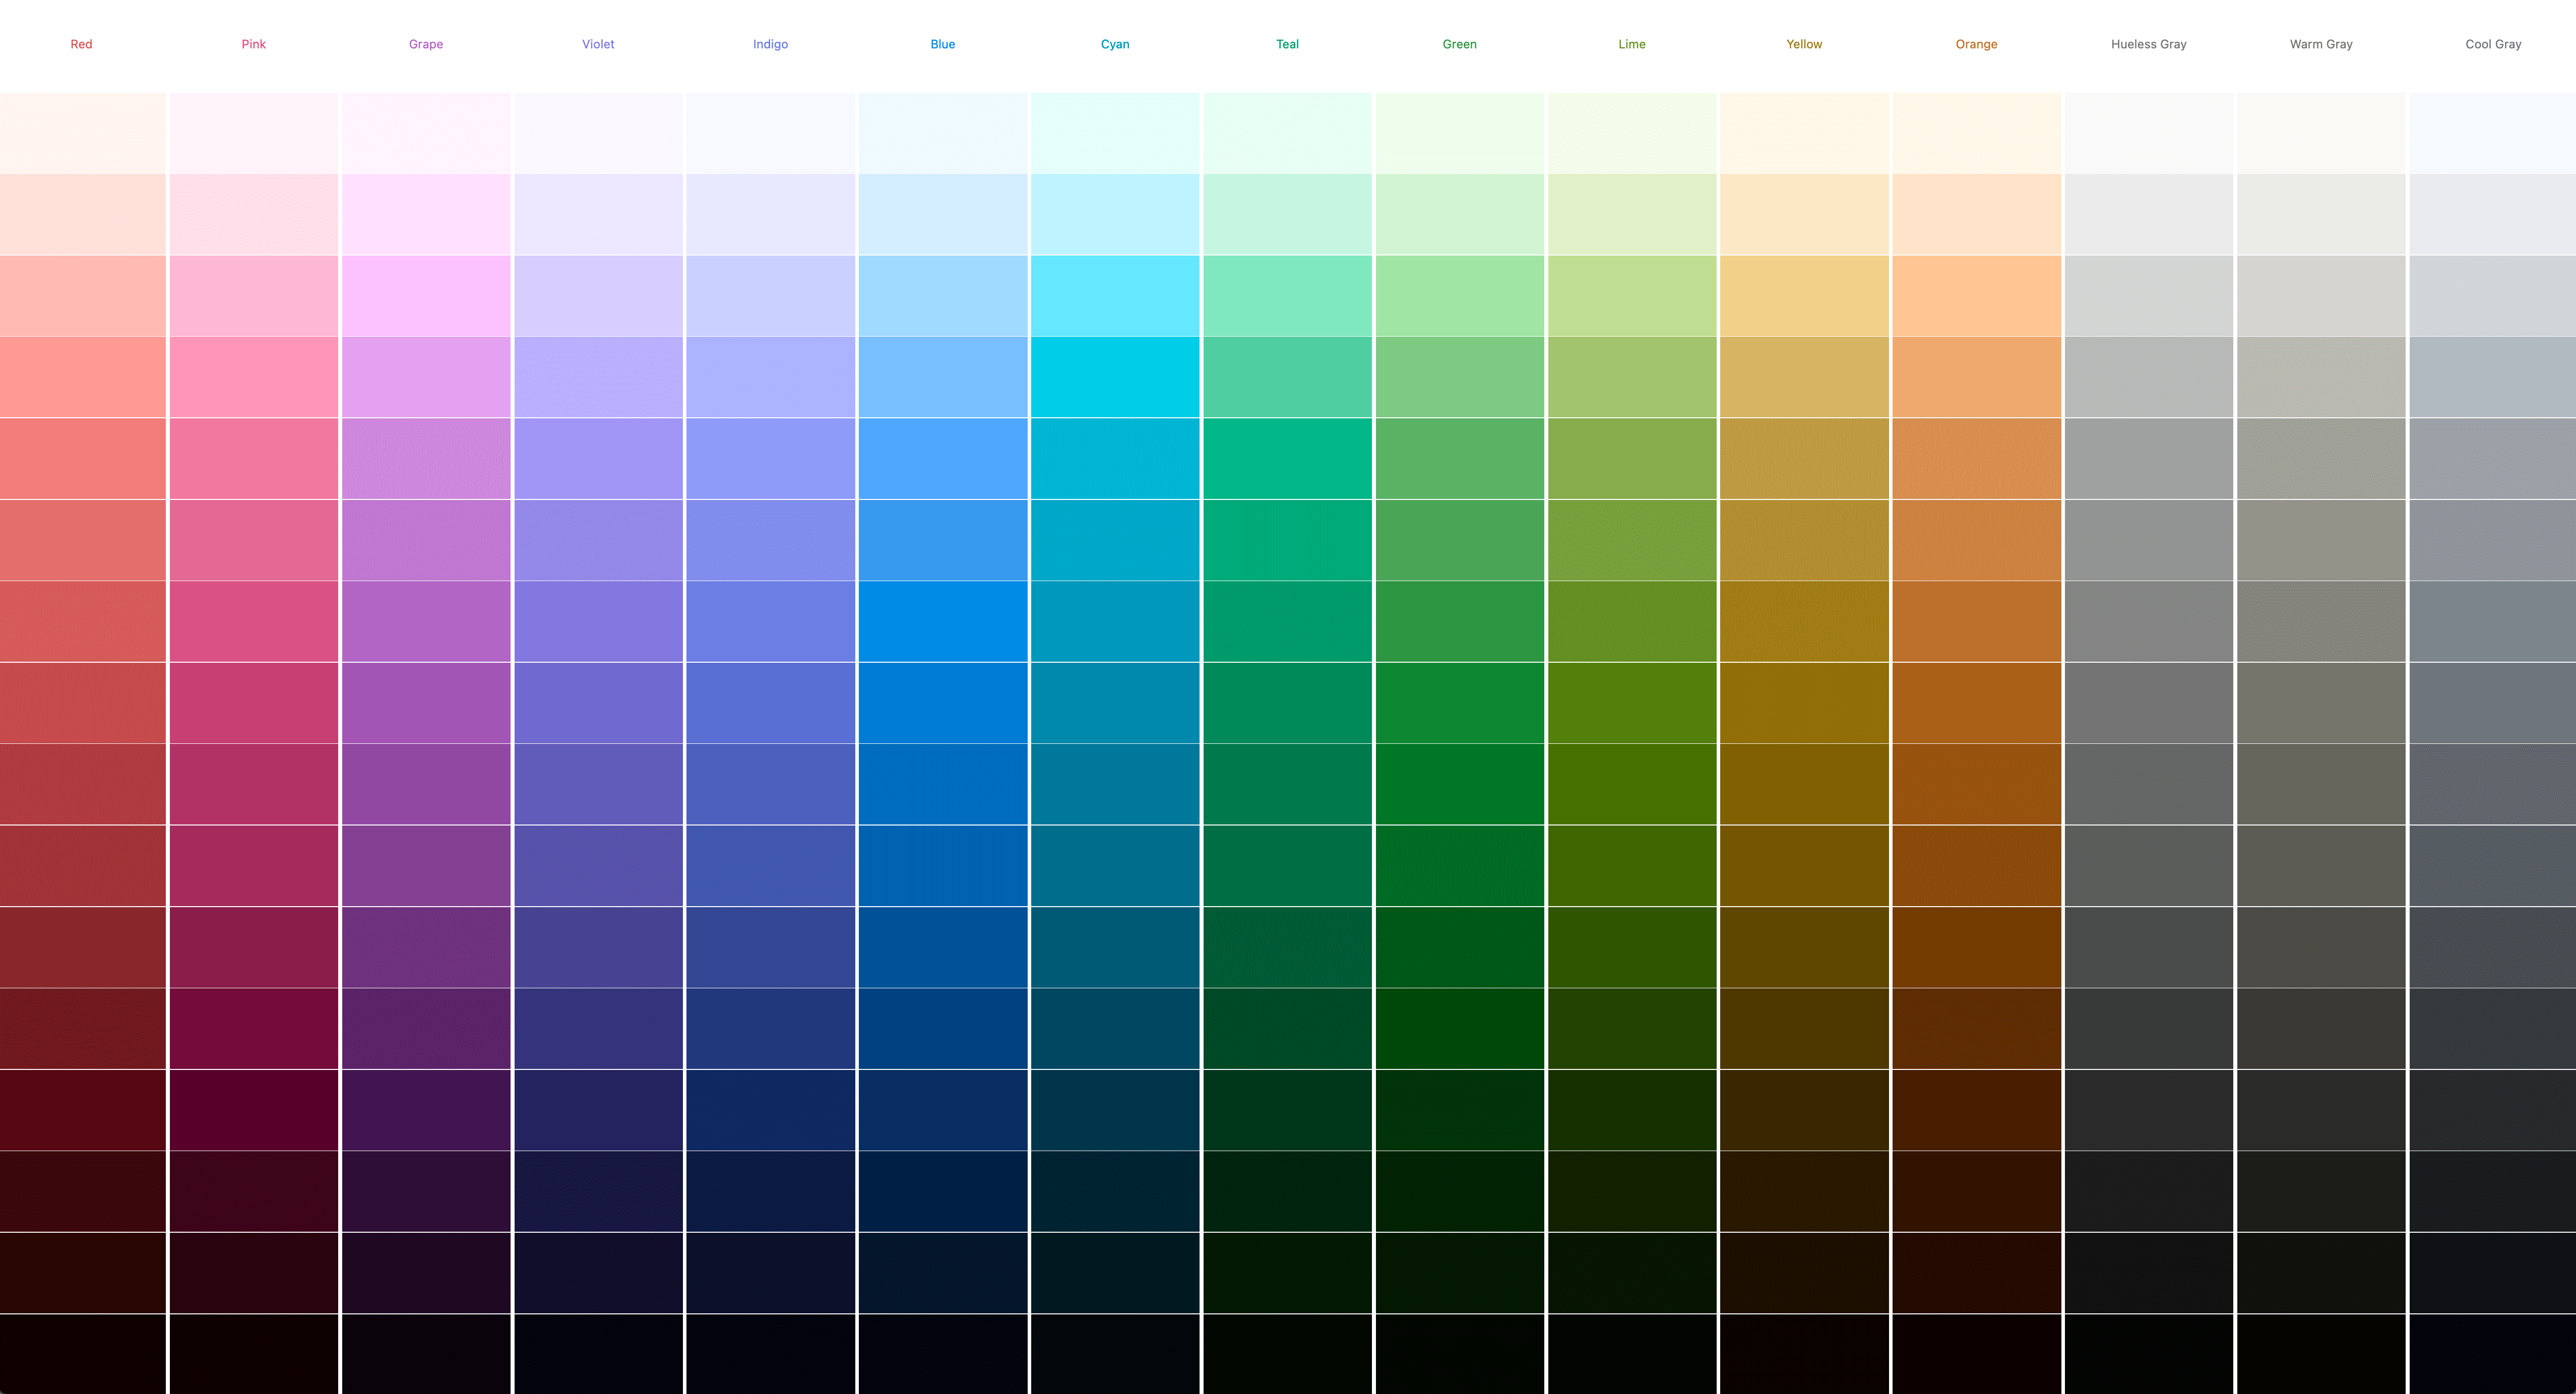 Captura de pantalla de 15 paletas, todas generadas dinámicamente por CSS.